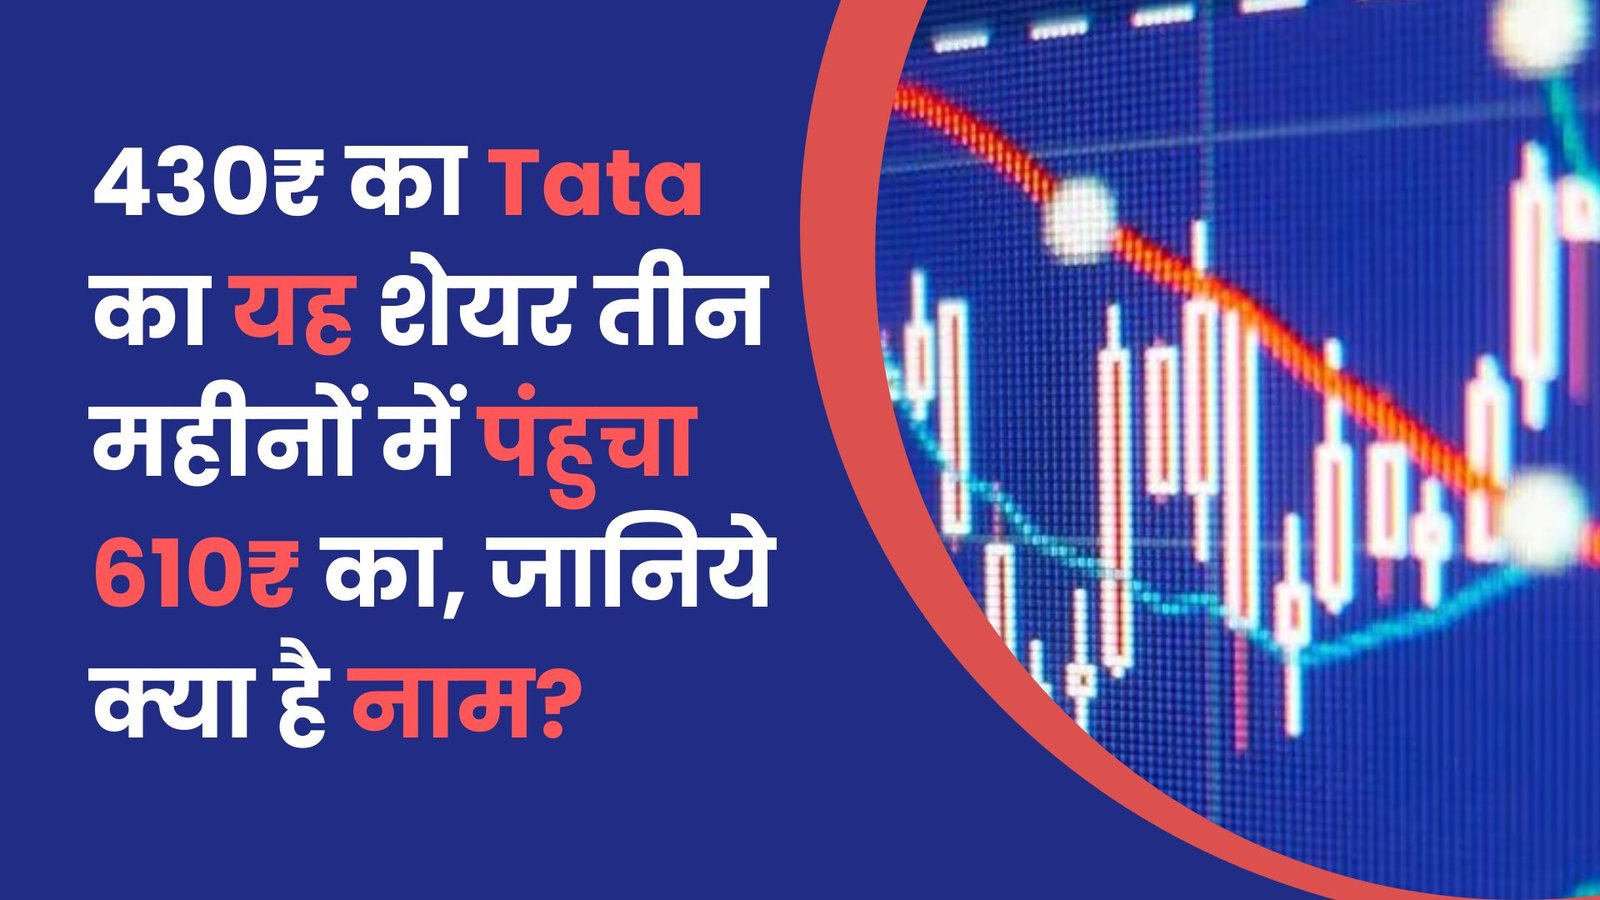 430₹ का Tata का यह शेयर तीन महीनों में पंहुचा 610₹ का, जानिये क्या है नाम?